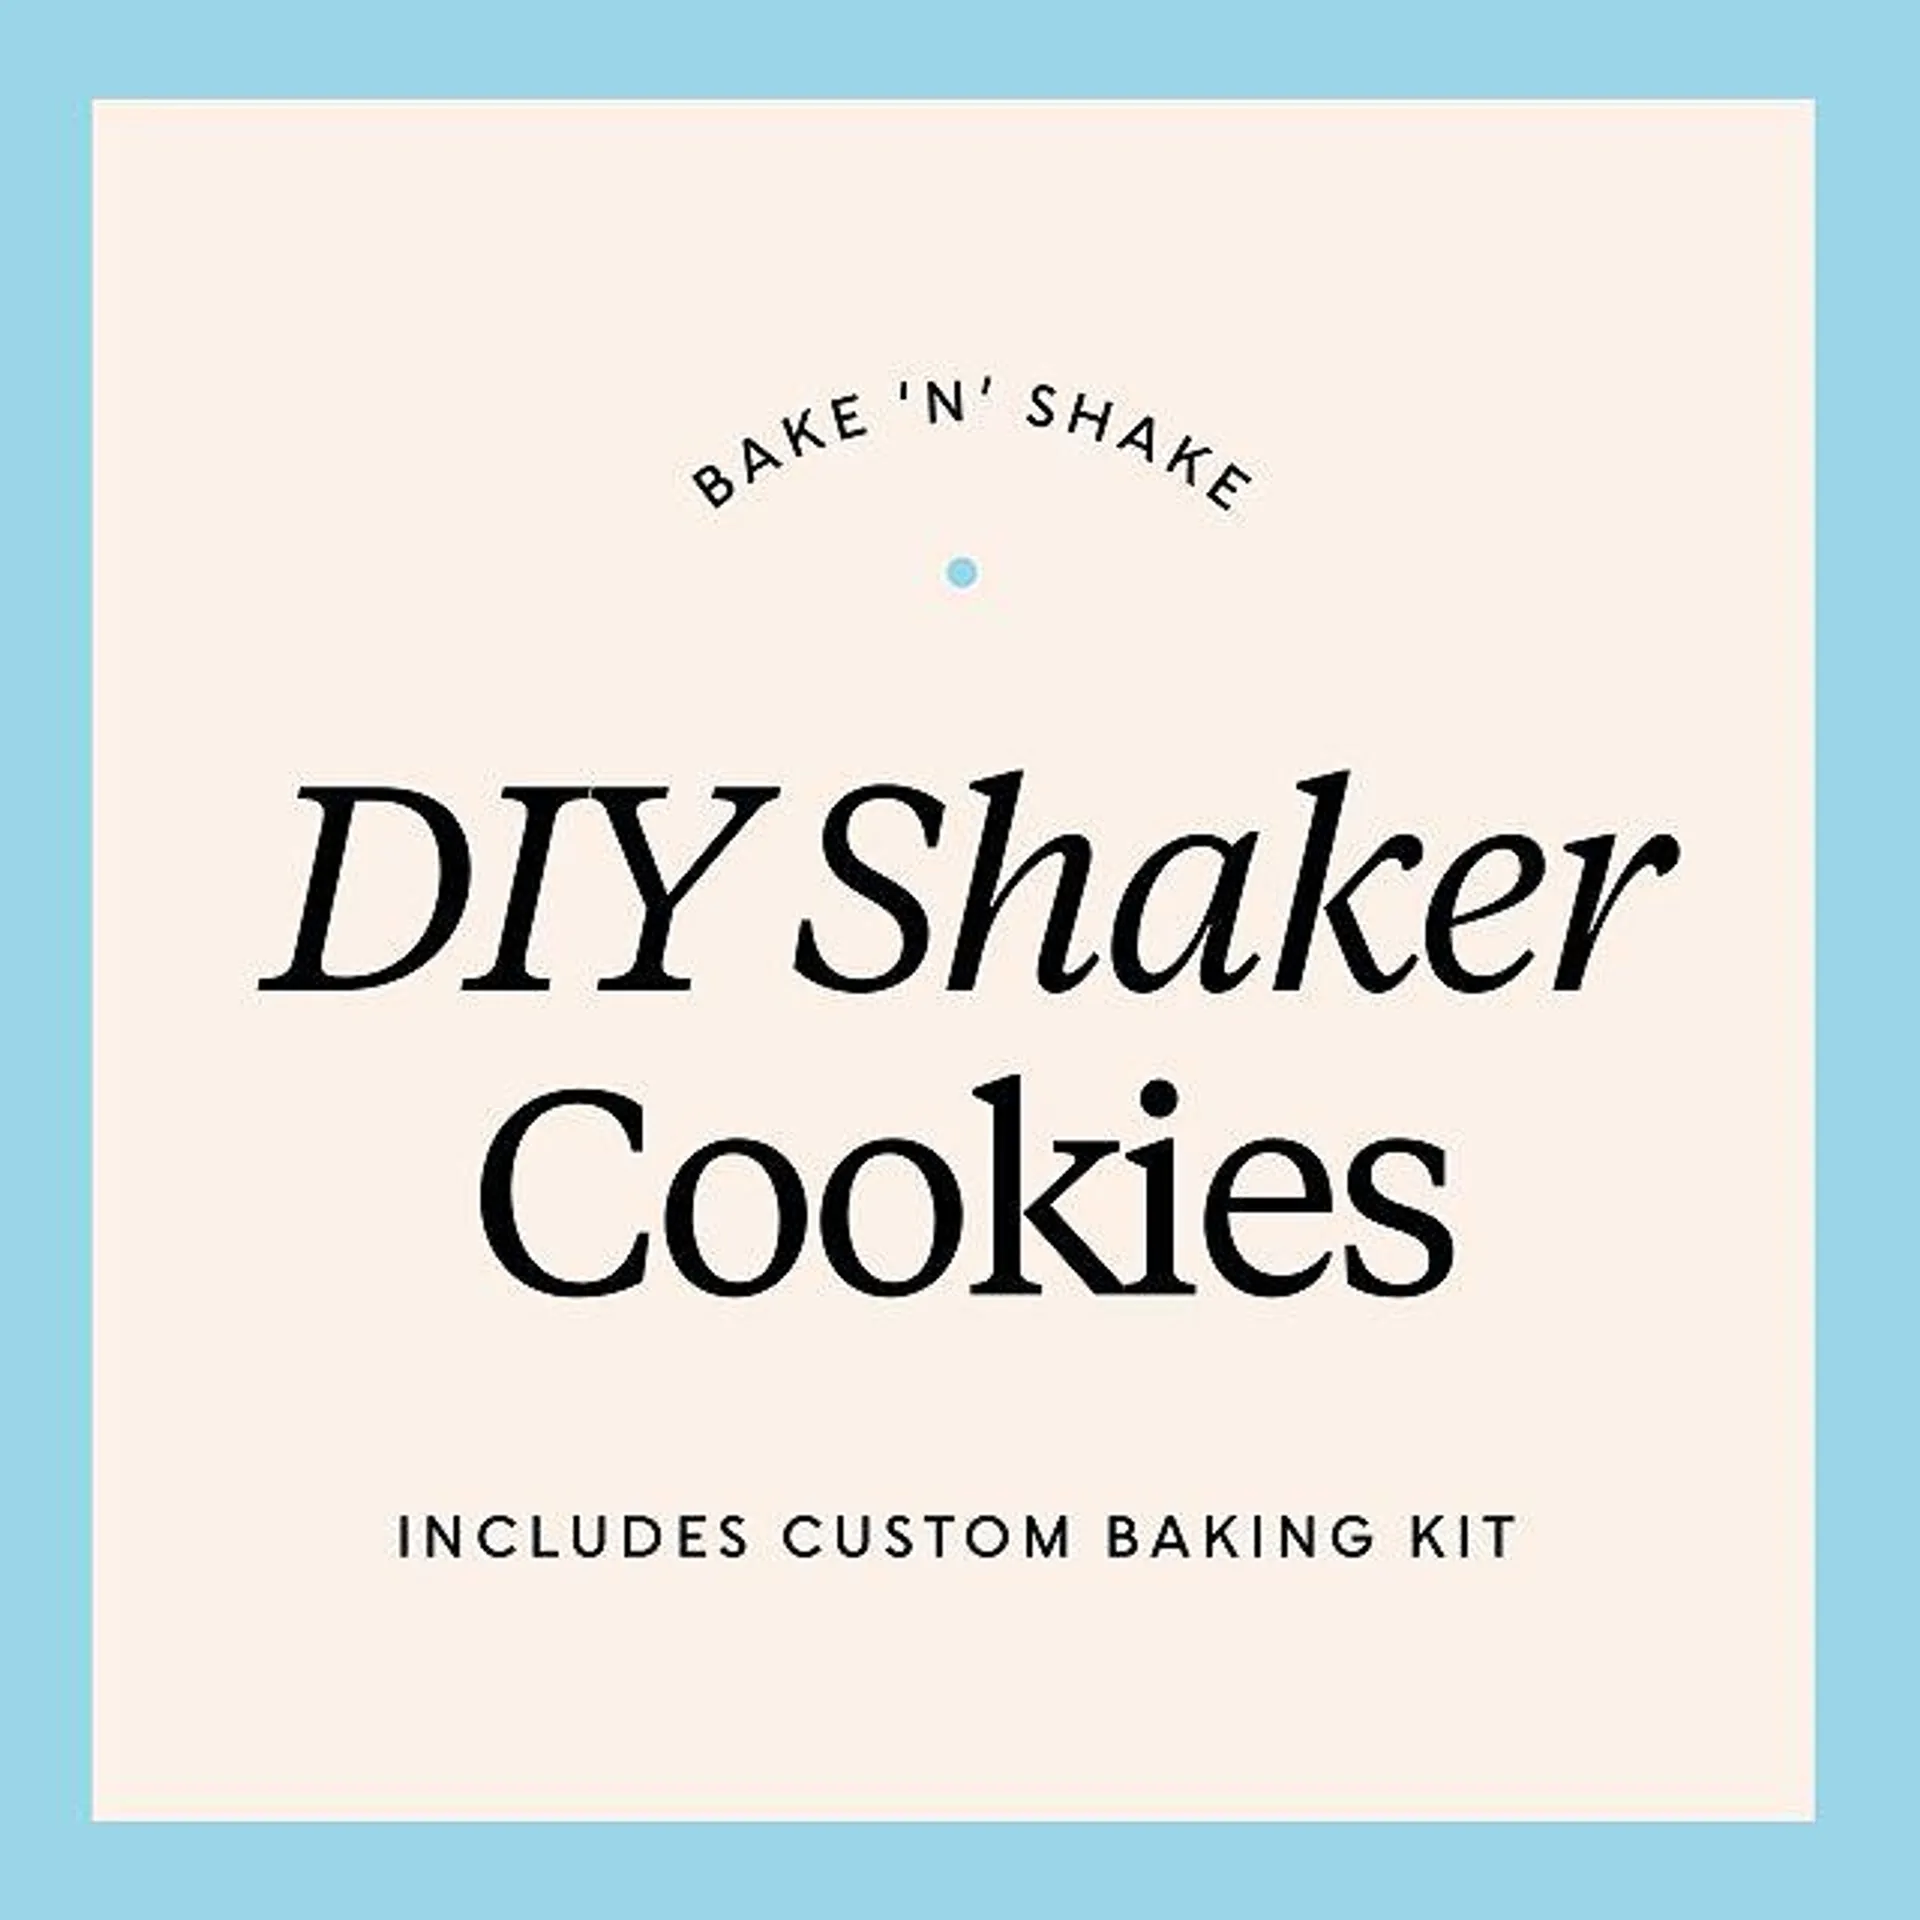 Bake 'n' Shake: DIY Shaker Cookies